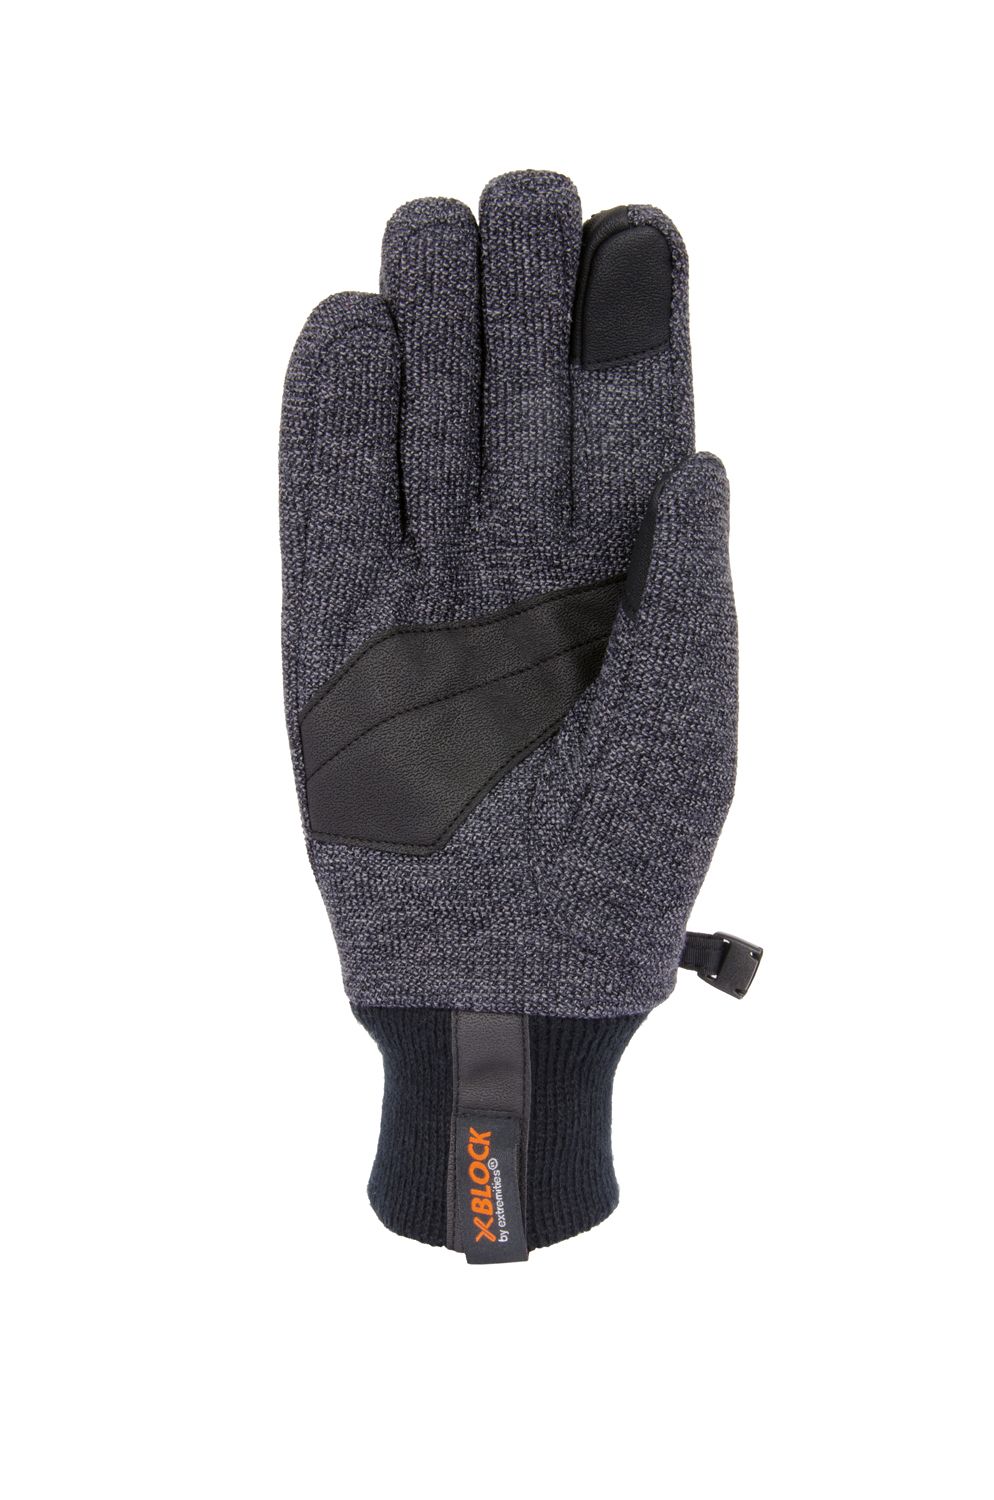 Extremities Bora Glove